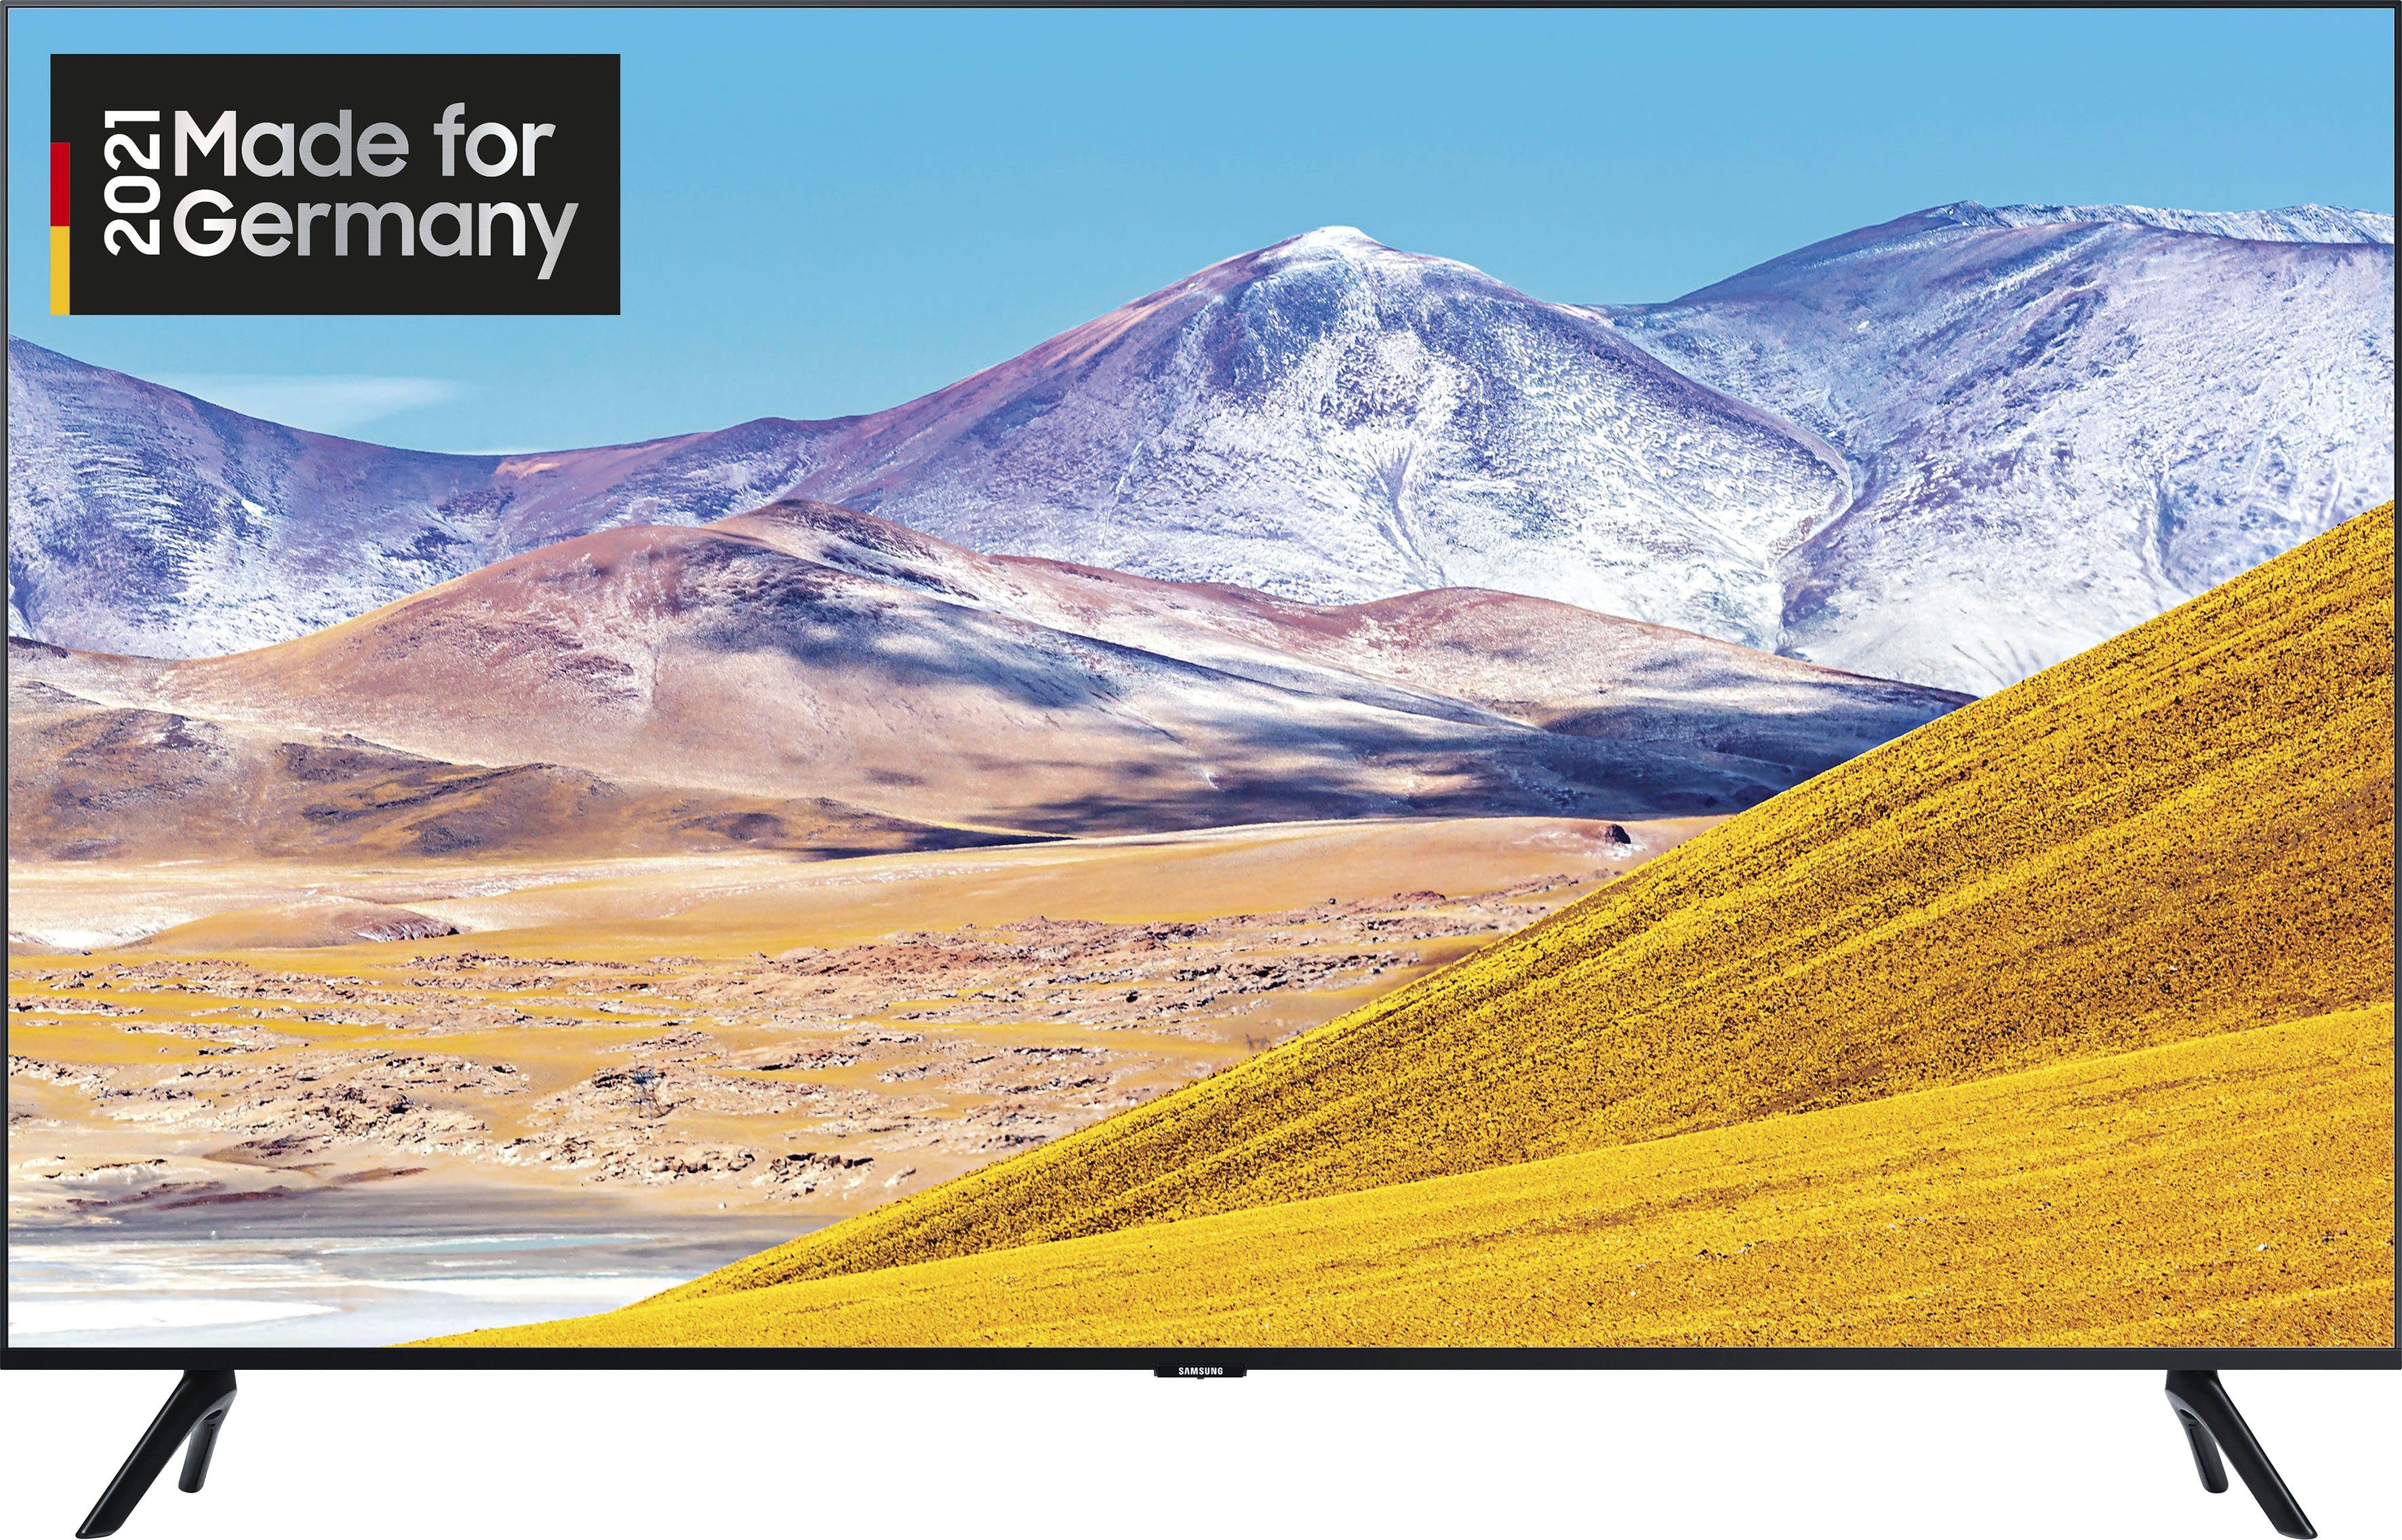 Oost Posters Toevoeging 4k Ultra HD TV's online kopen? Kijk snel in ons assortiment | OTTO